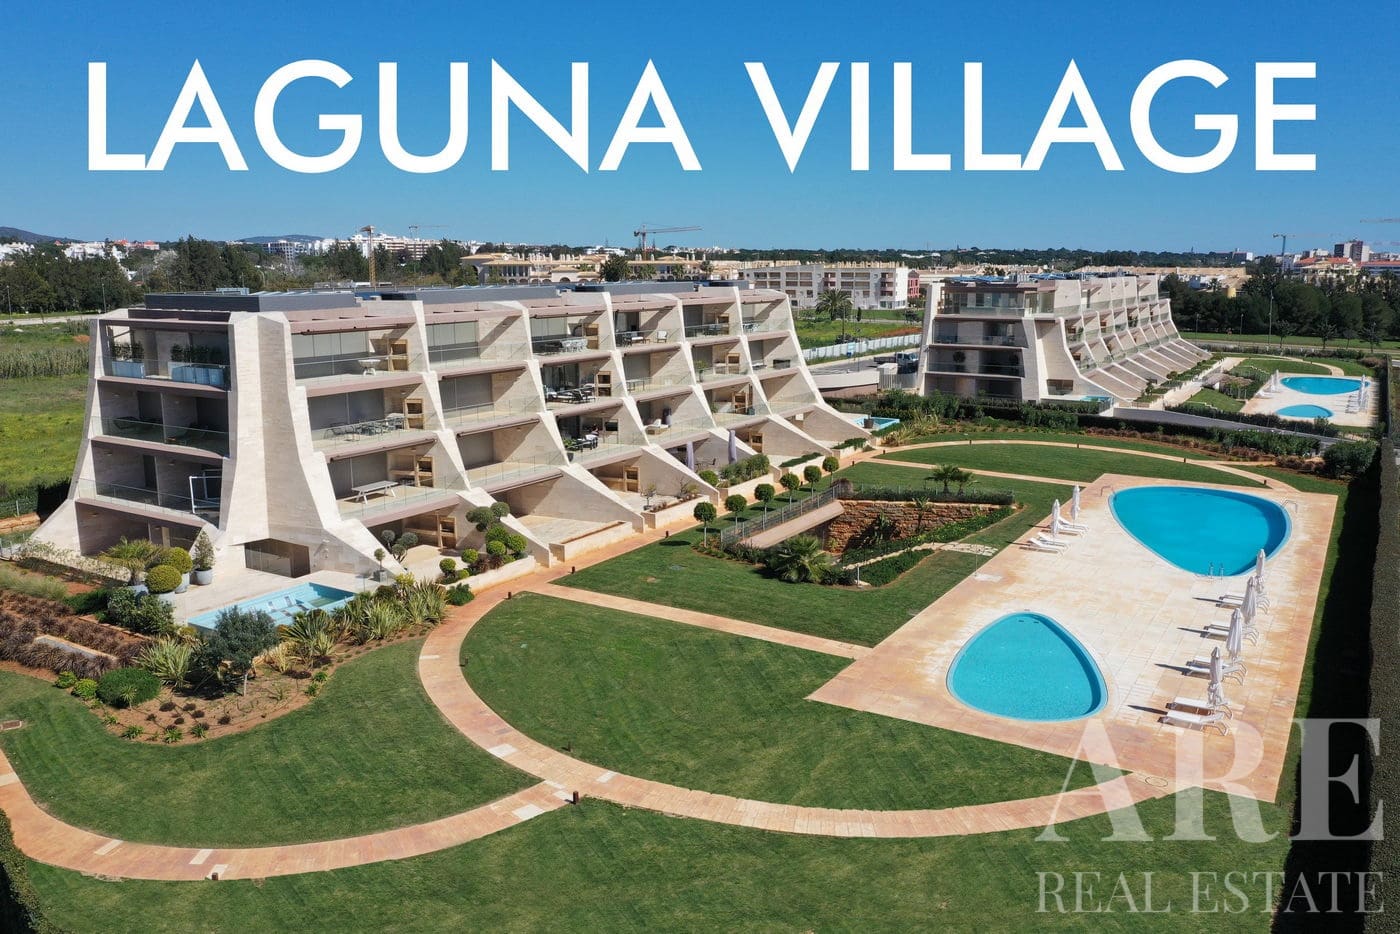 Laguna Village condominium presentation